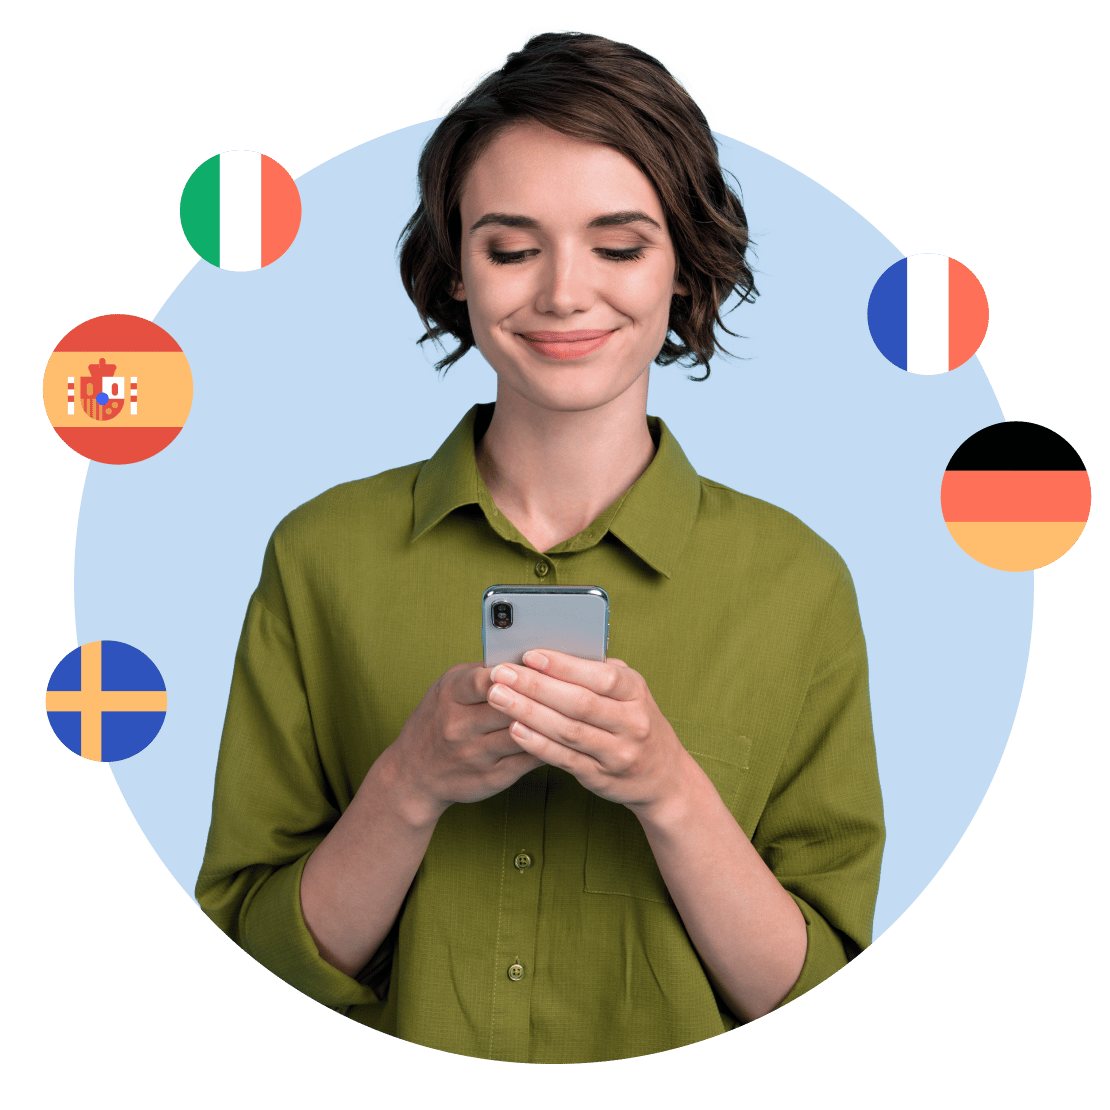 使用 Duolingo 愉快地学习了多种语言，借助 NordVPN 增加了隐私的女性。